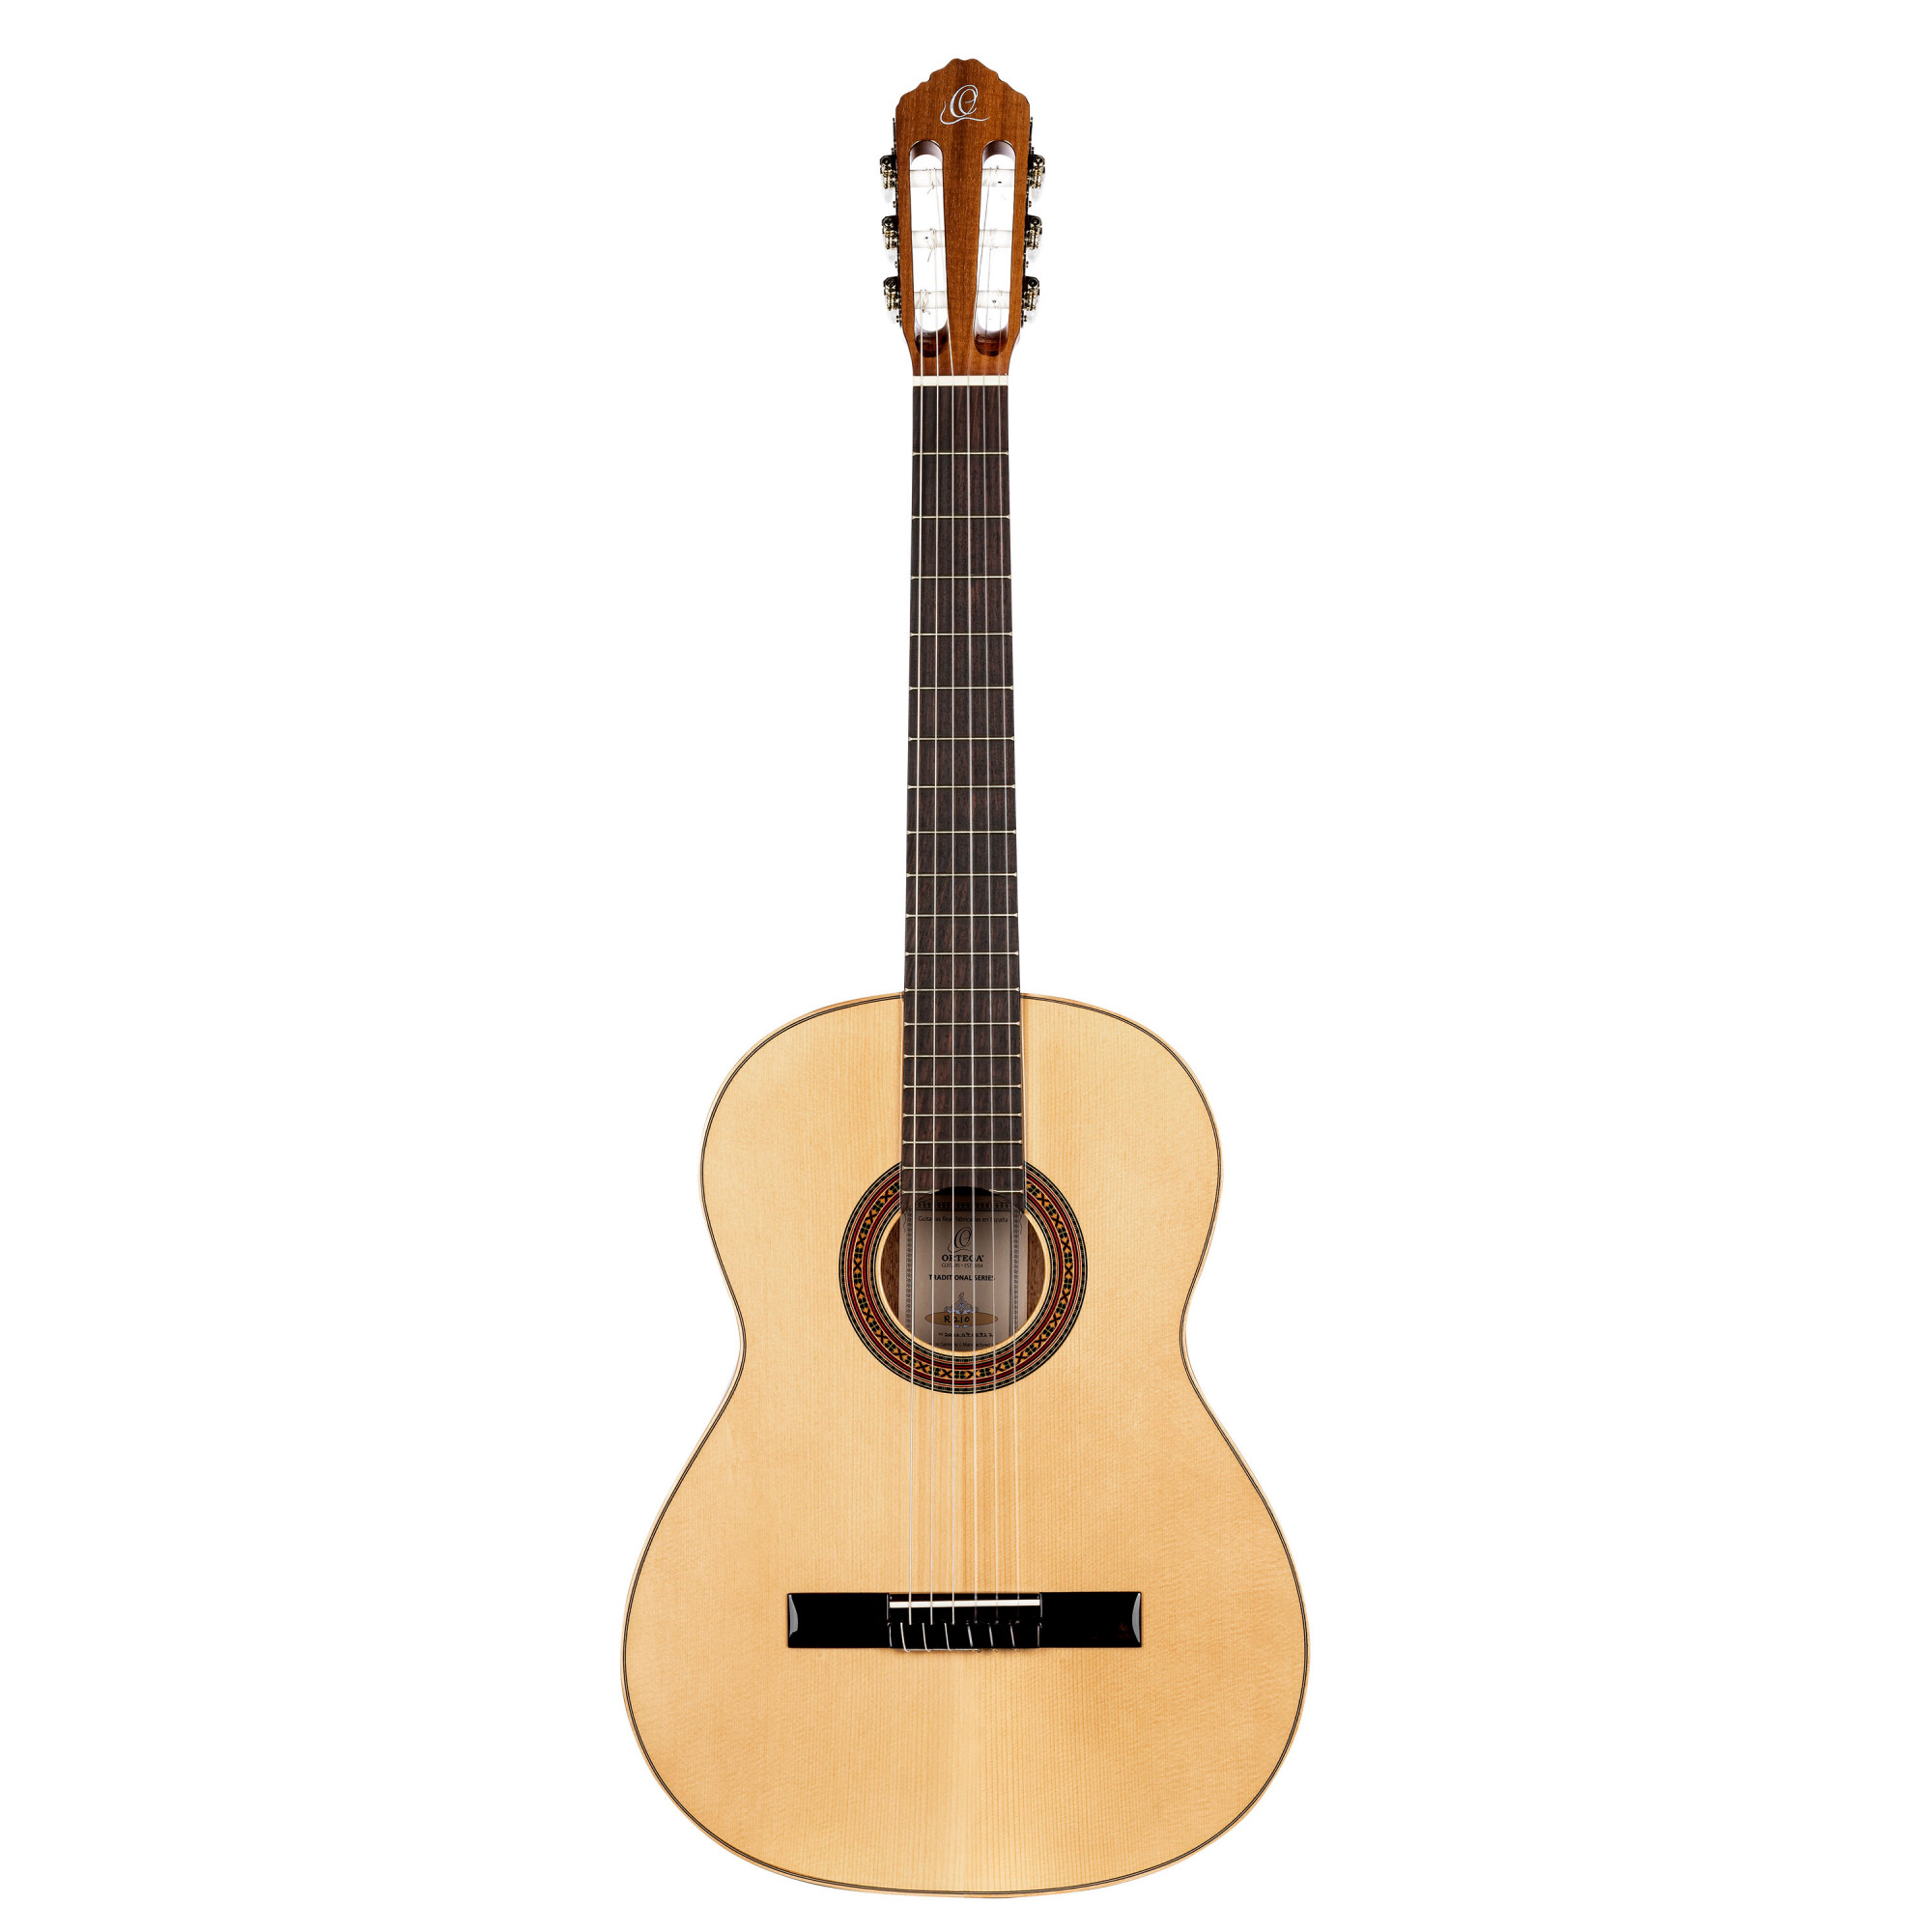 Ortega Guitars Capodastre Folk Chrome